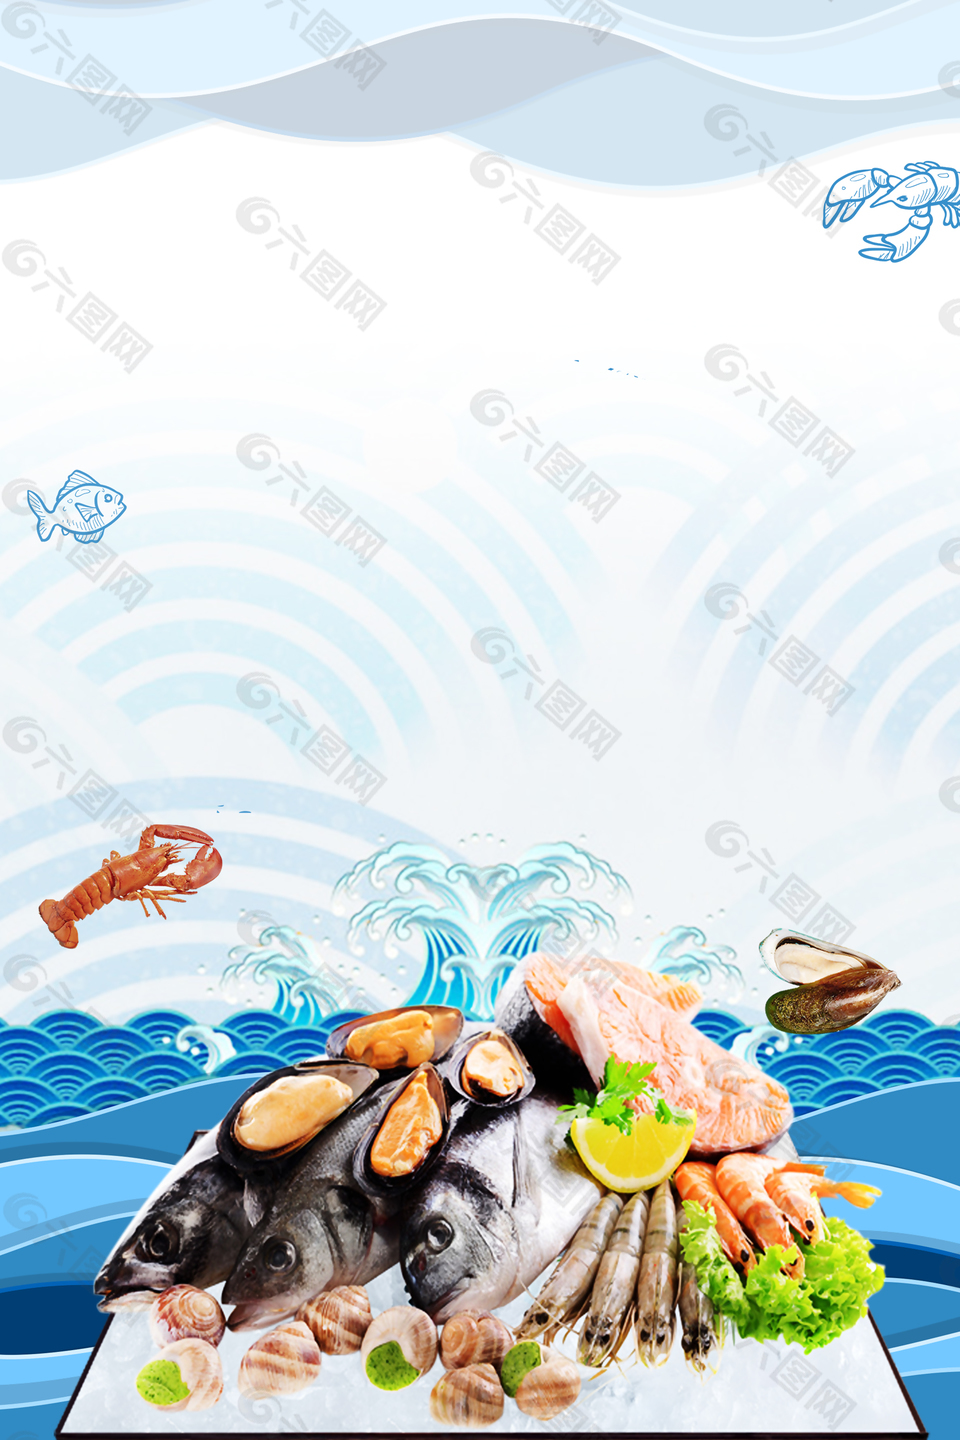 极品海鲜自助餐促销海报背景